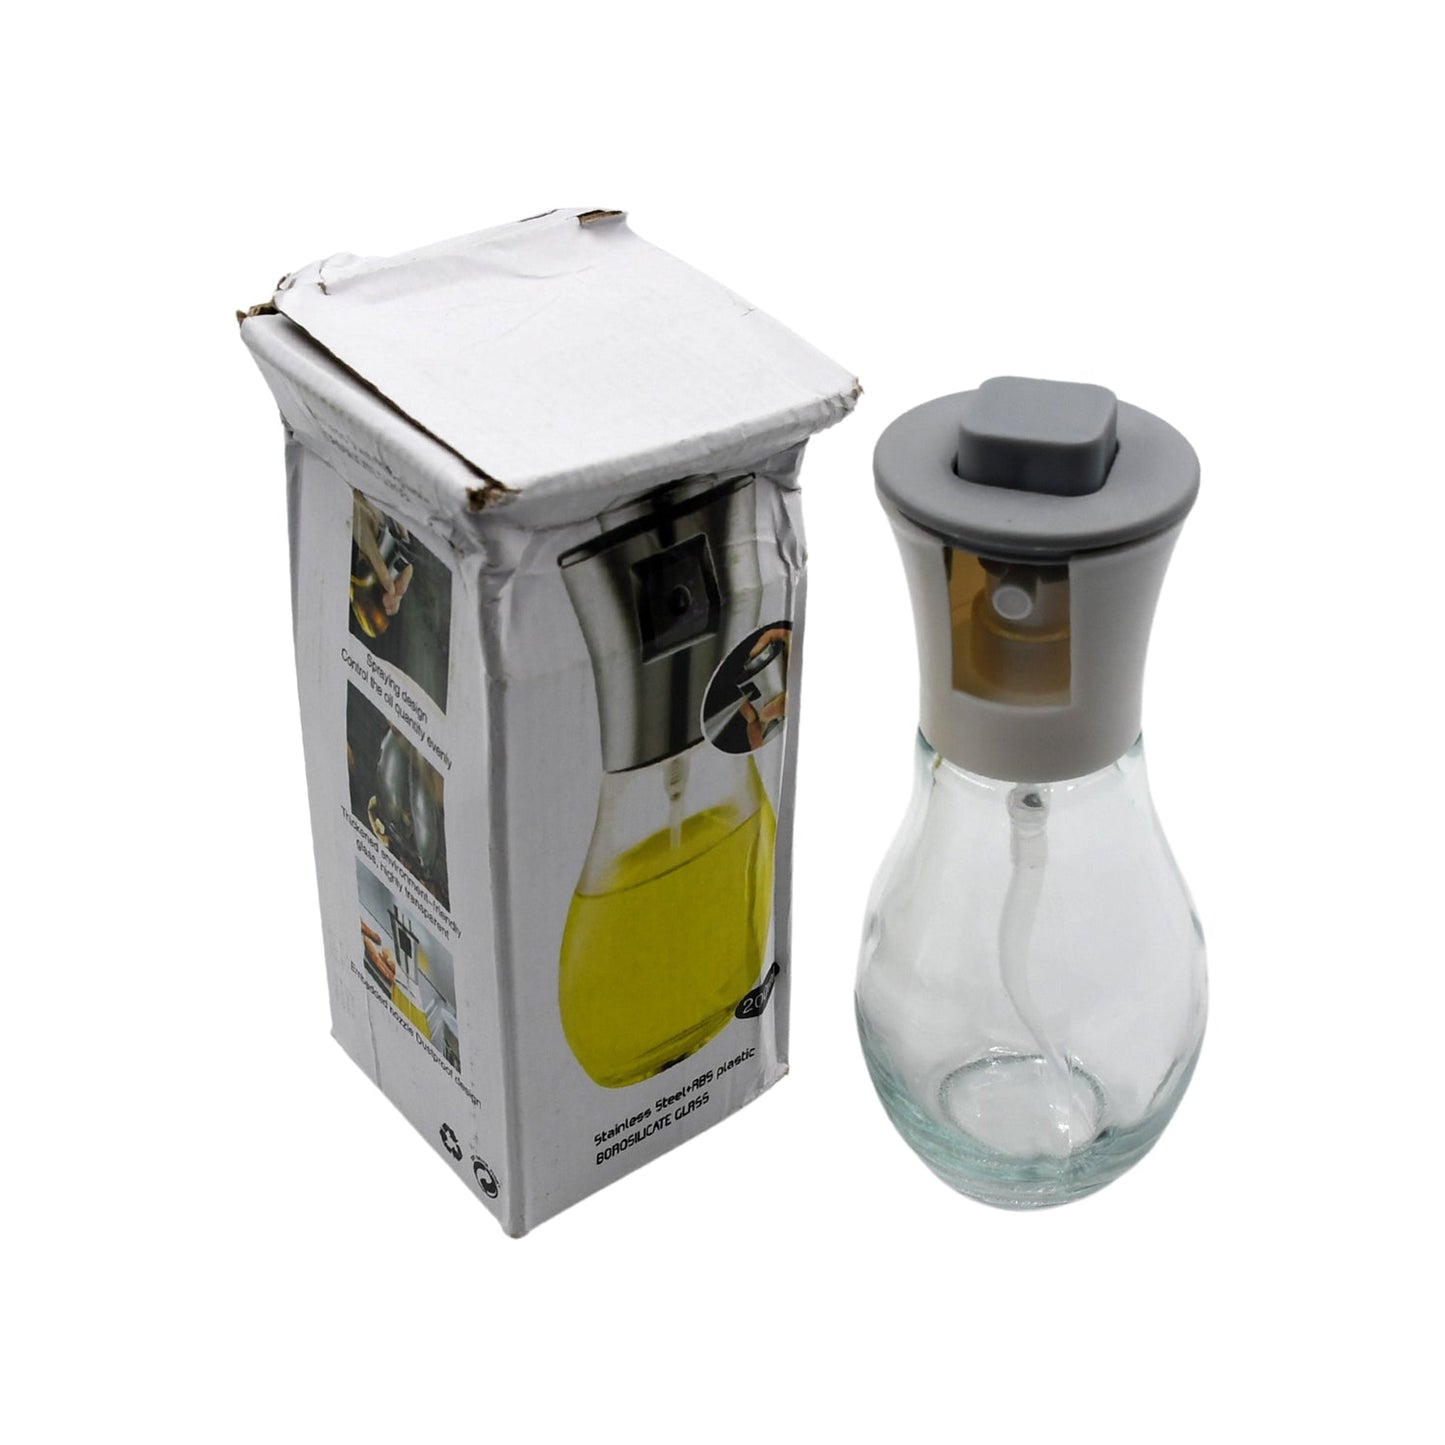 5340 Oil Dispenser Bottle, Oil and Vinegar Cruet, Oil Sprayer Dispenser, Olive Oil Dispenser 200 ml Mist Oil Spray Bottle for Cooking with Plastic